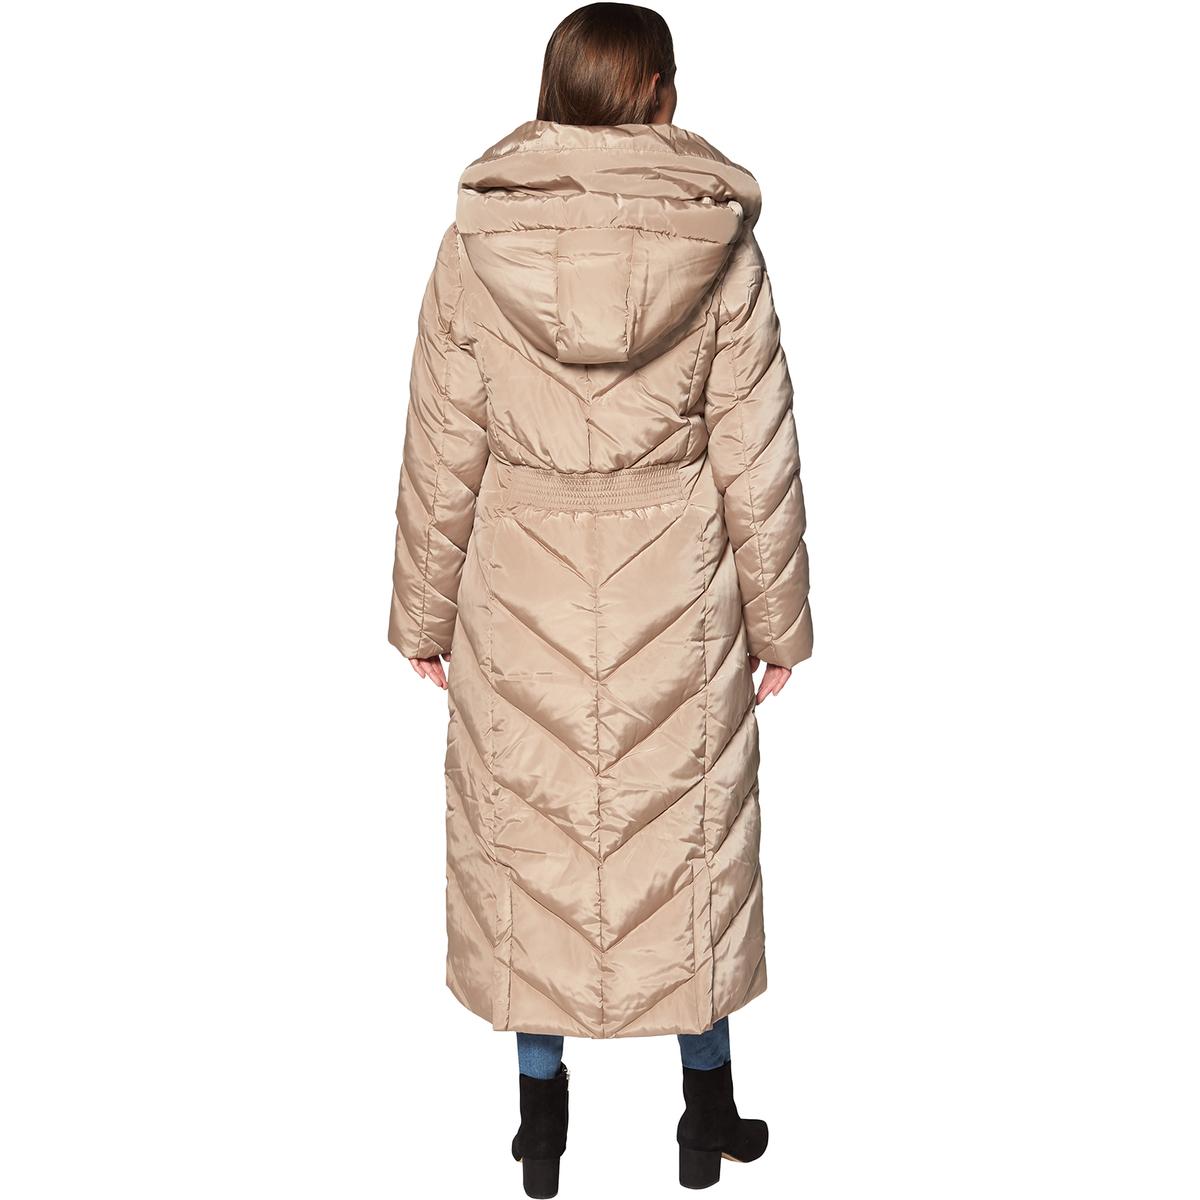 Steve Madden Long Puffer Coat for Women- Fleece Lined Warm Winter Maxi ...